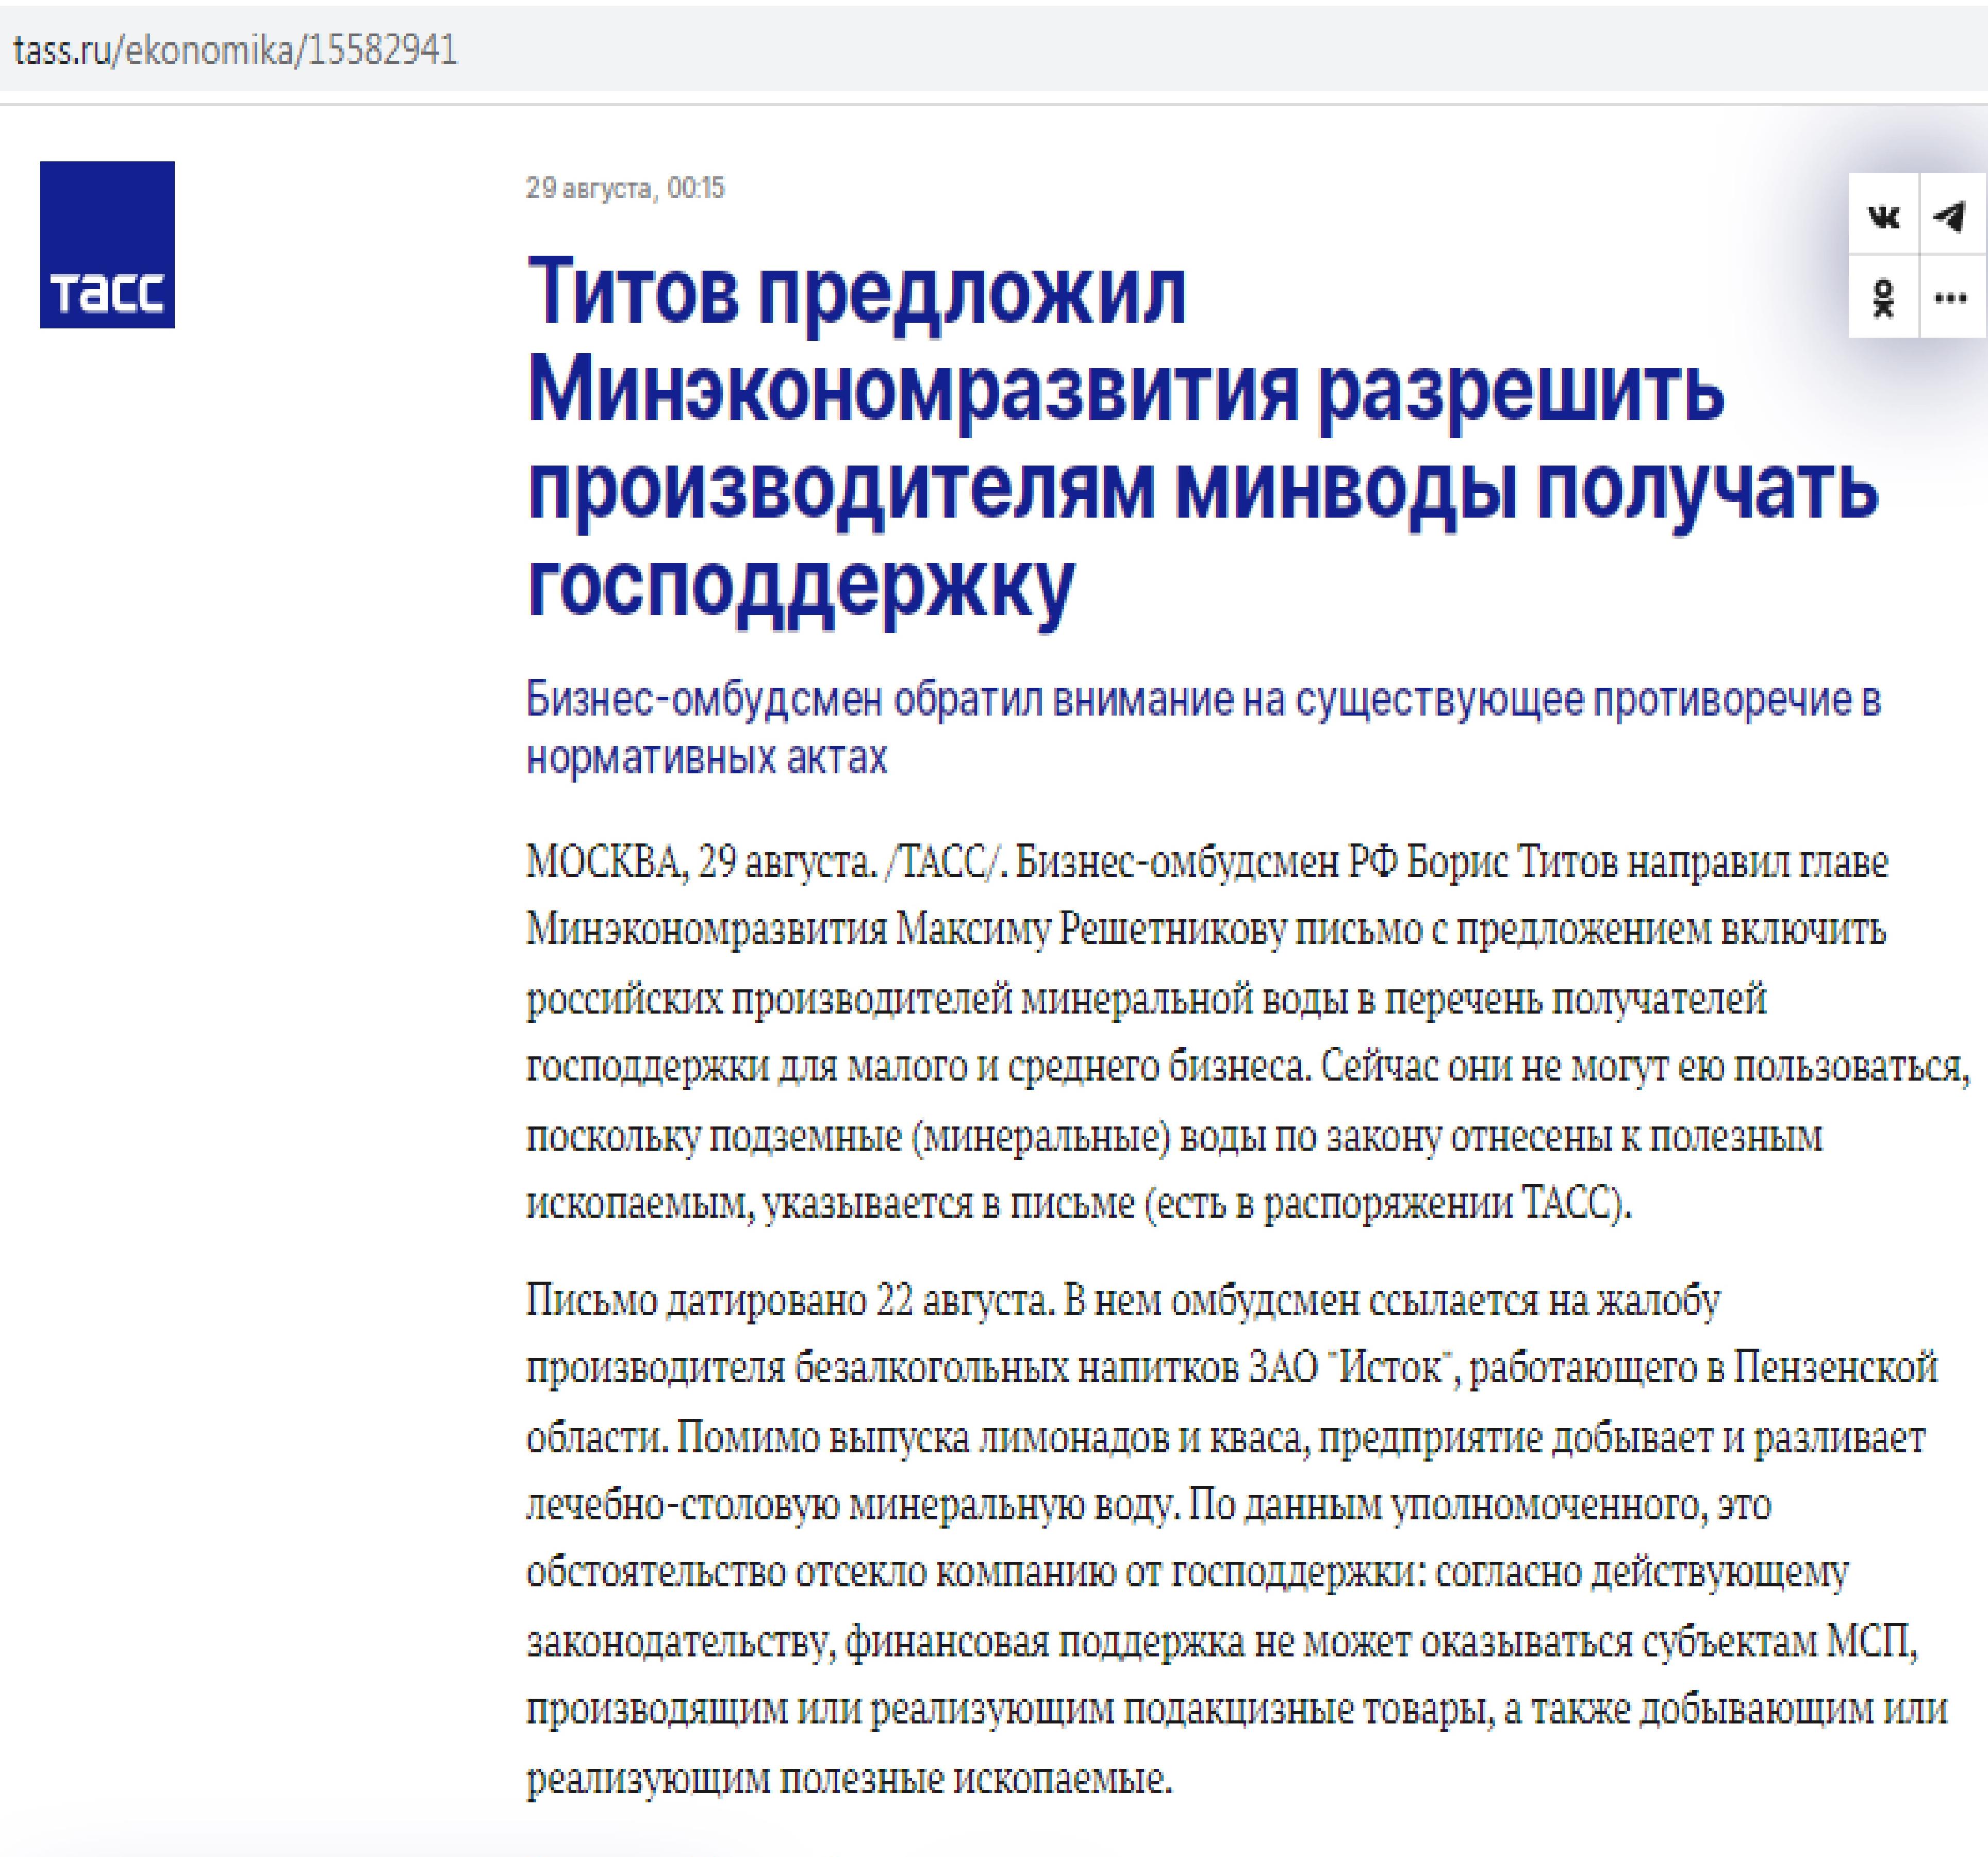 Бизнес-омбудсмен Борис Титов помогает ЗАО Исток и всей отрасли